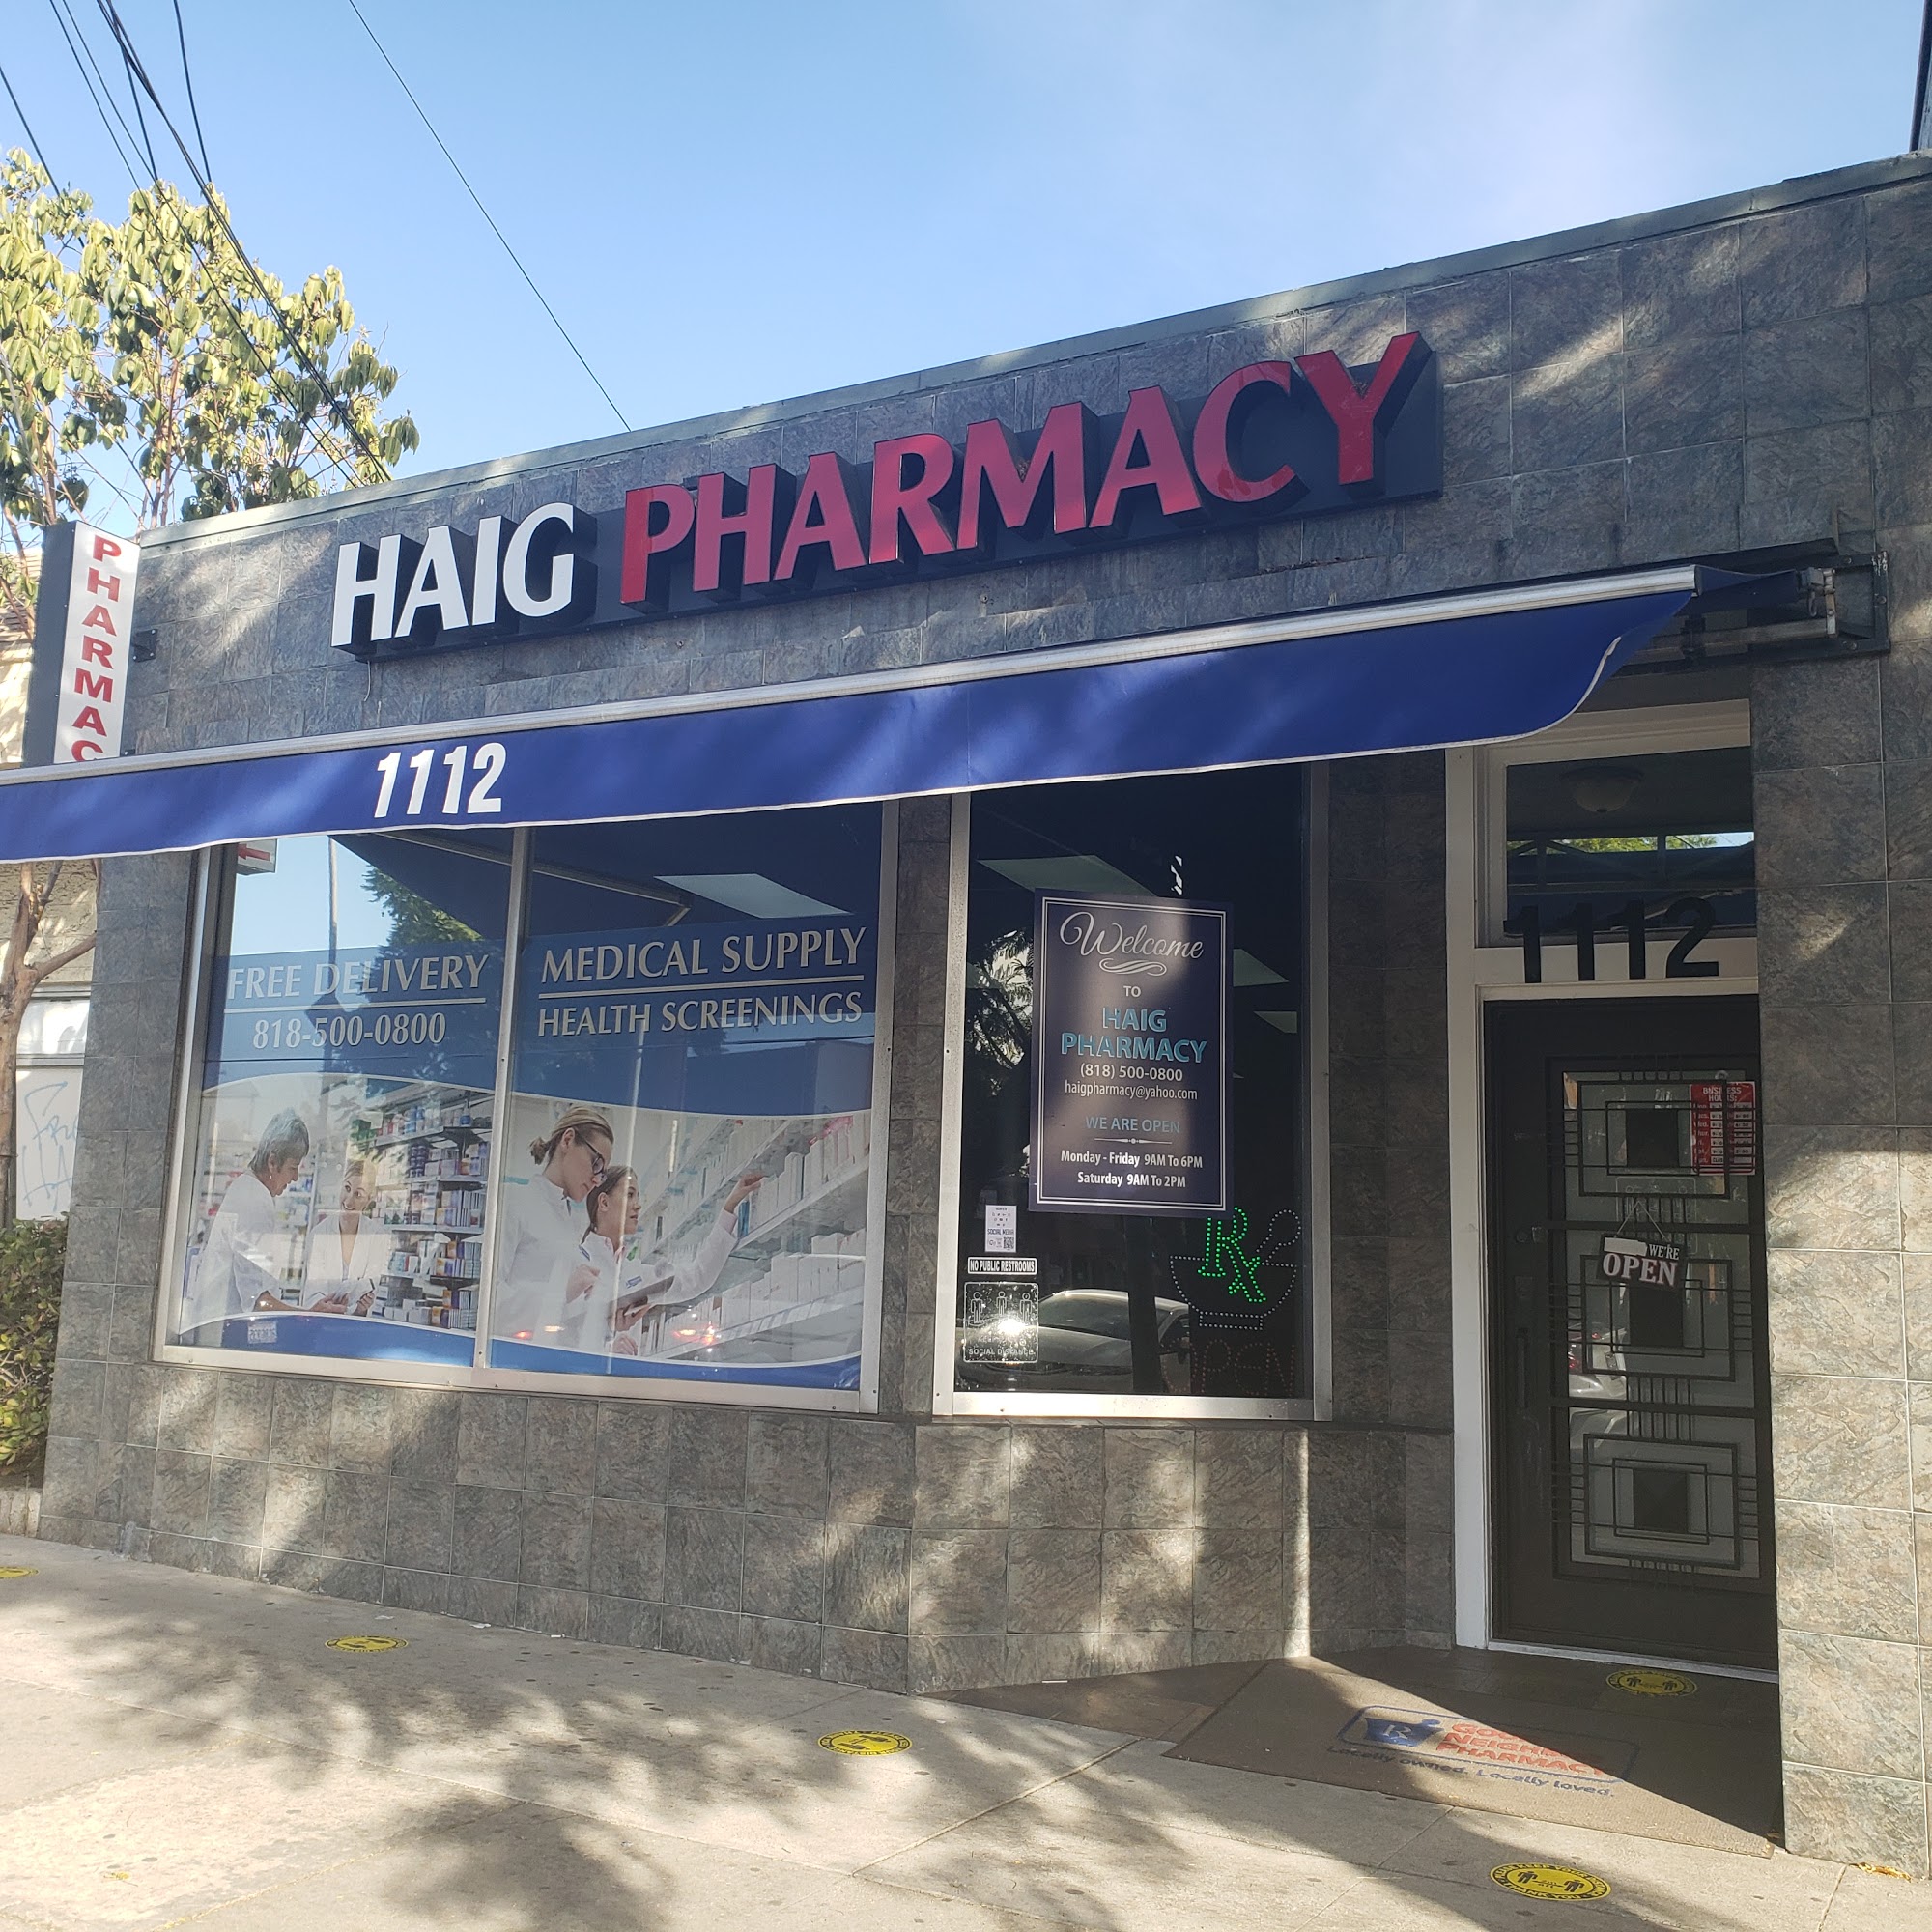 Haig Pharmacy